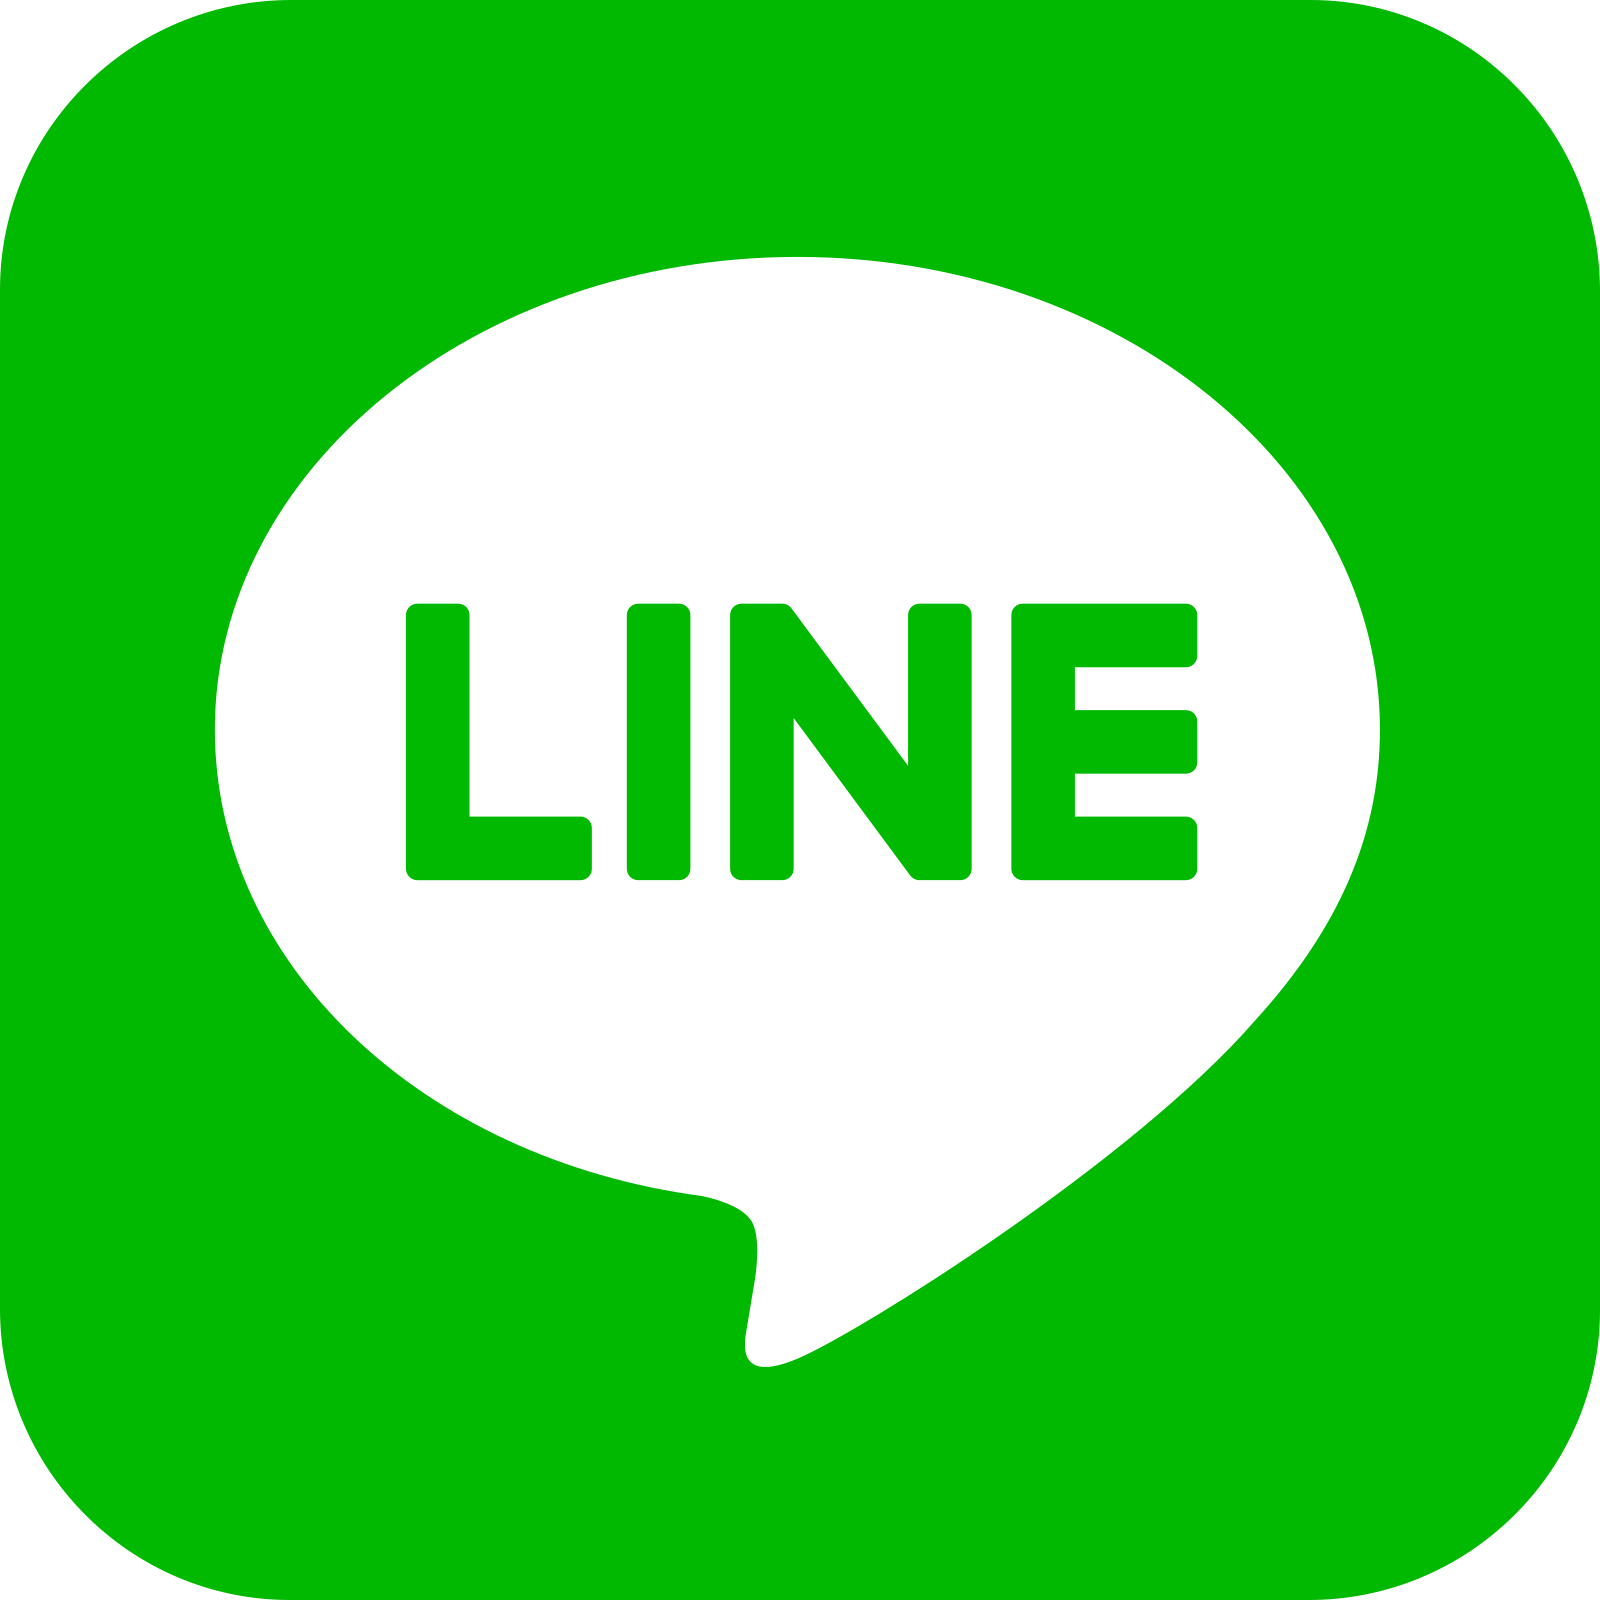 Line logo.